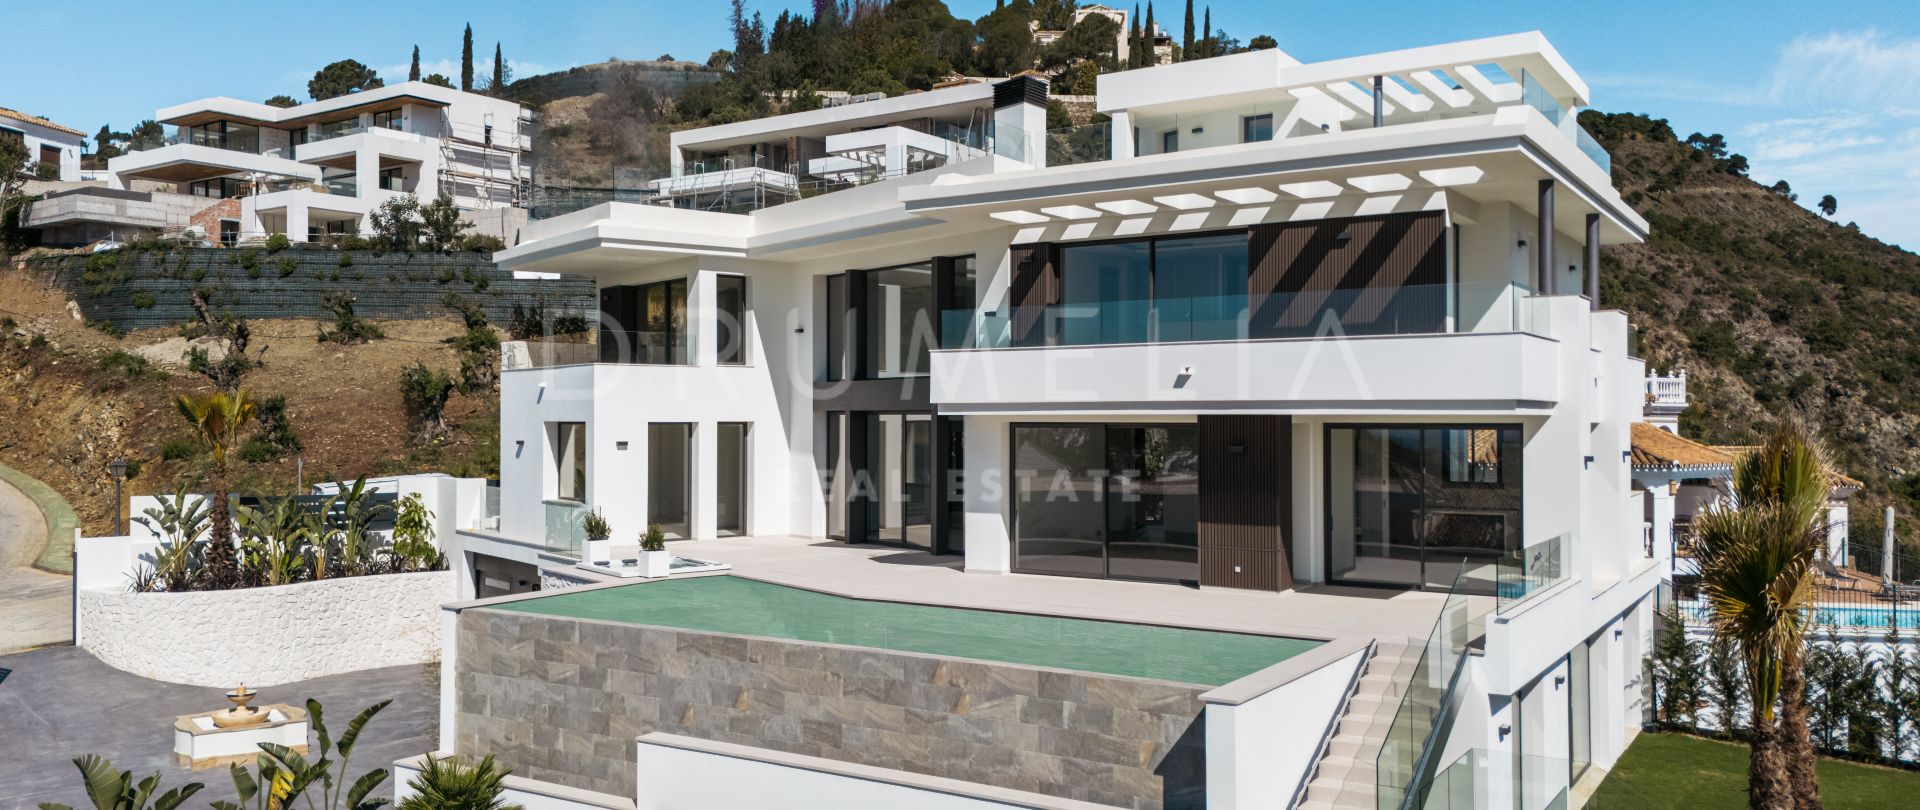 Lomas 10 - Villa moderne et neuve dans le prestigieux quartier de Lomas de la Quinta, Marbella, avec une vue imprenable sur la mer et la montagne.